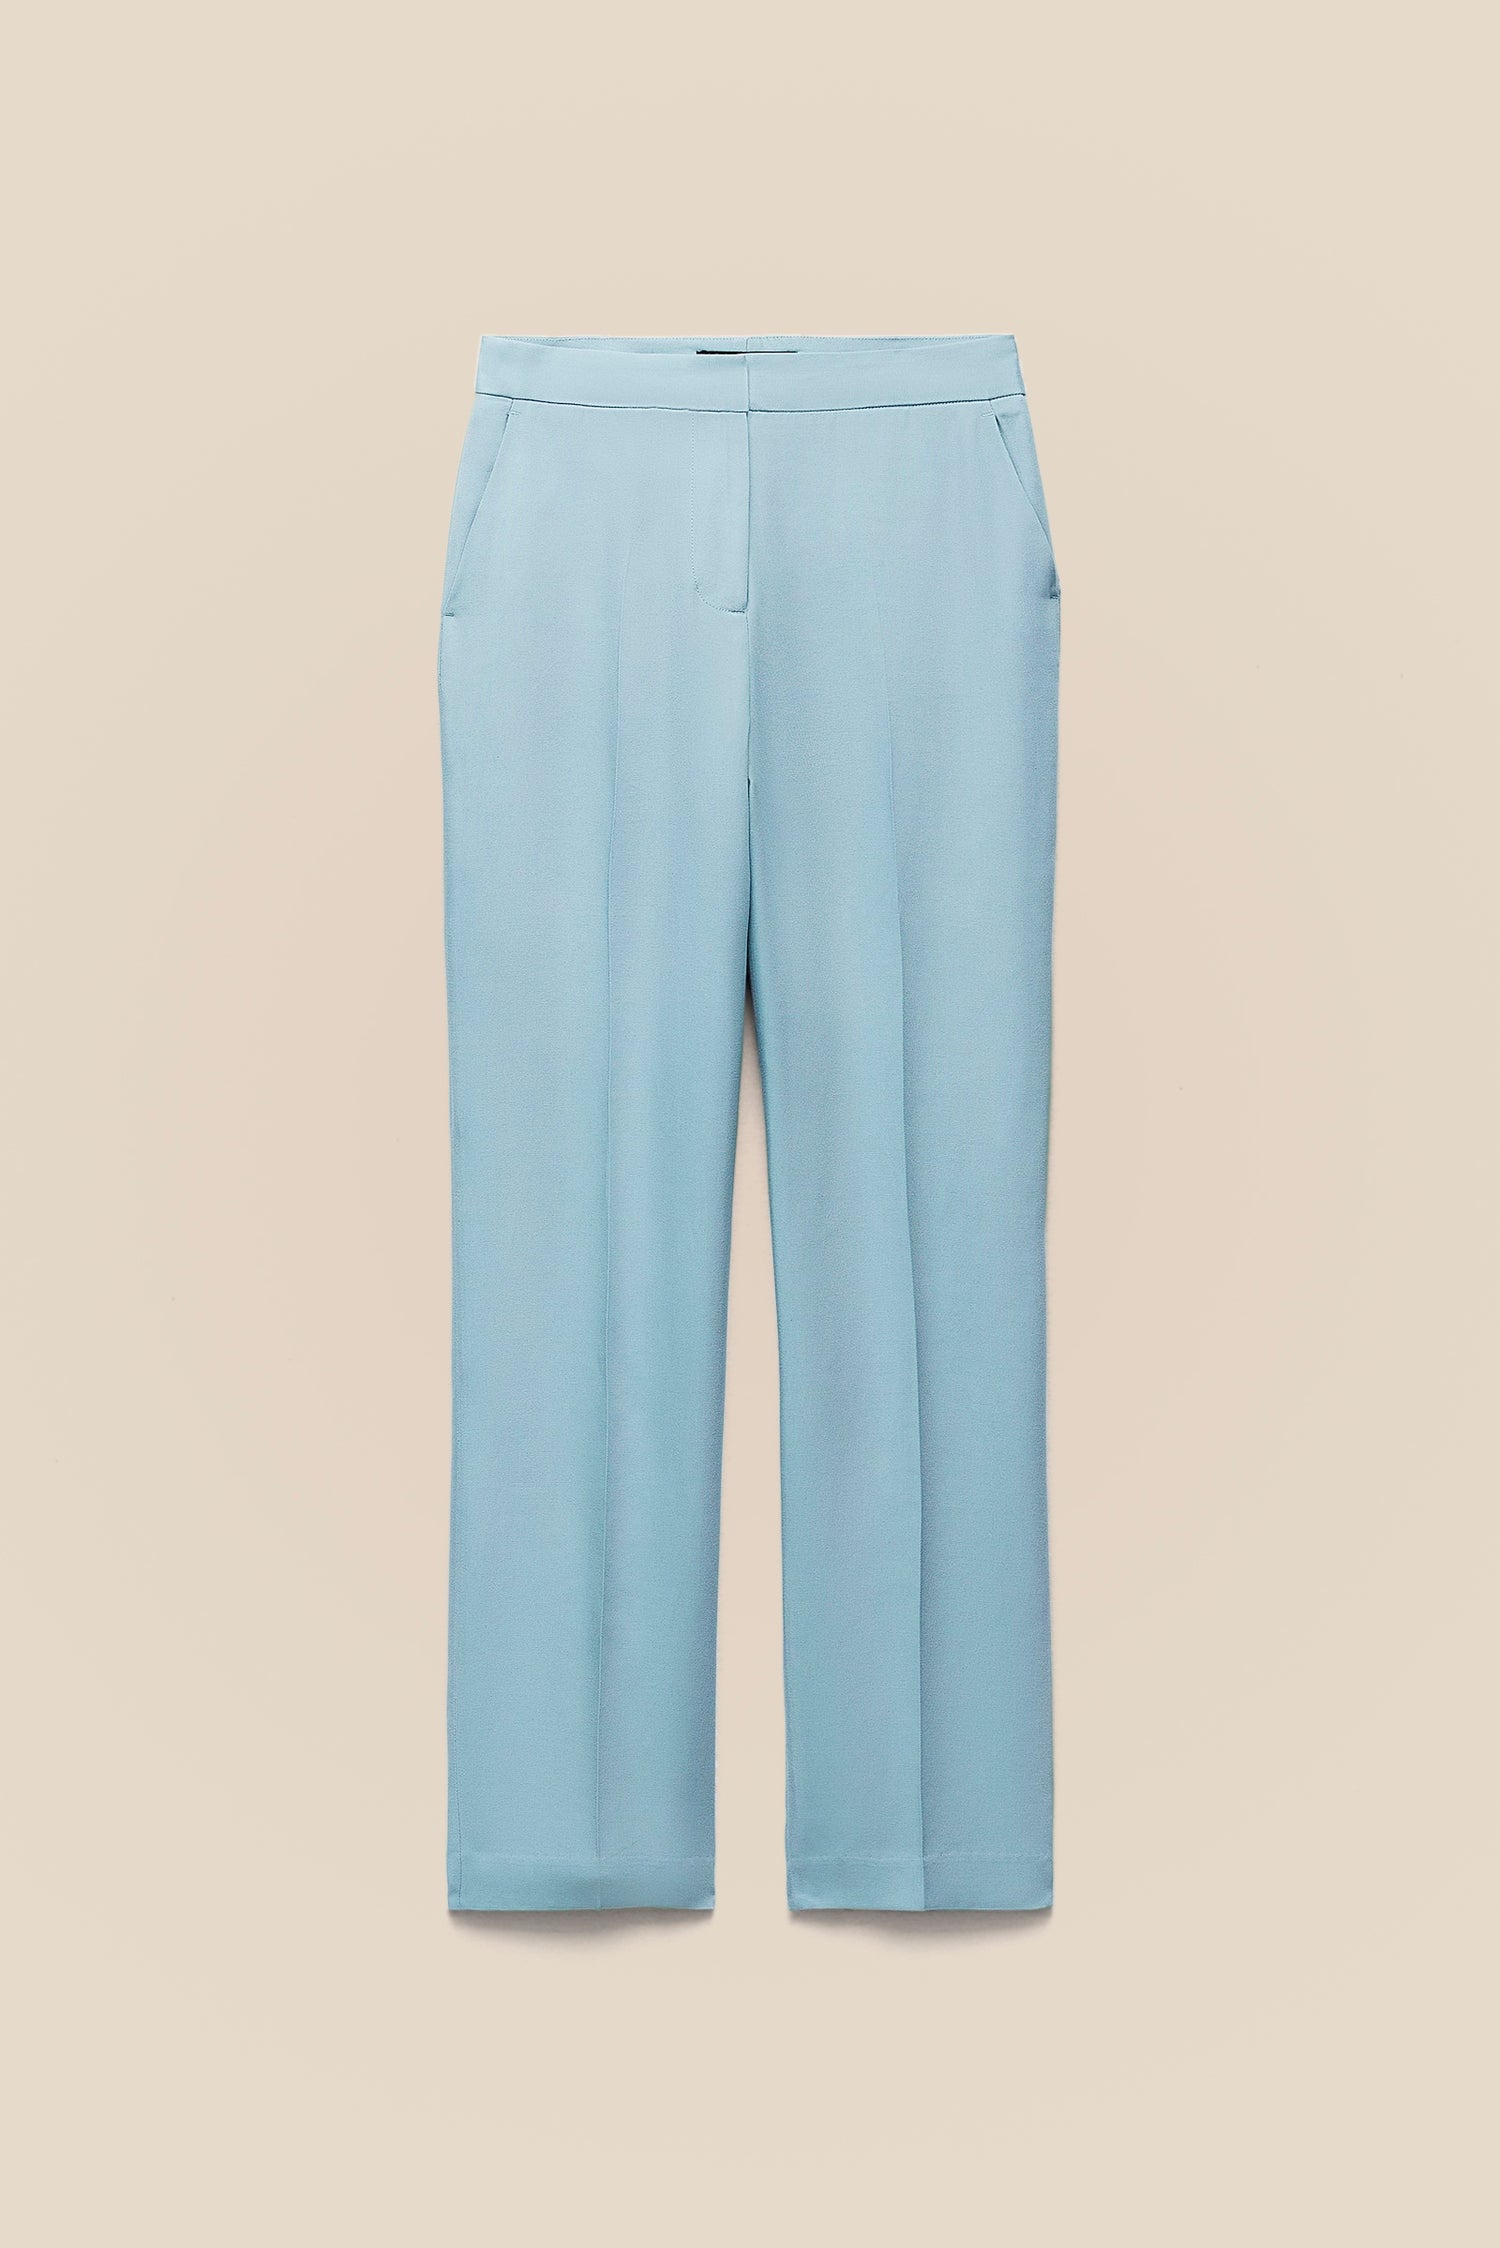 Blue Linen Pants kevincollin.com